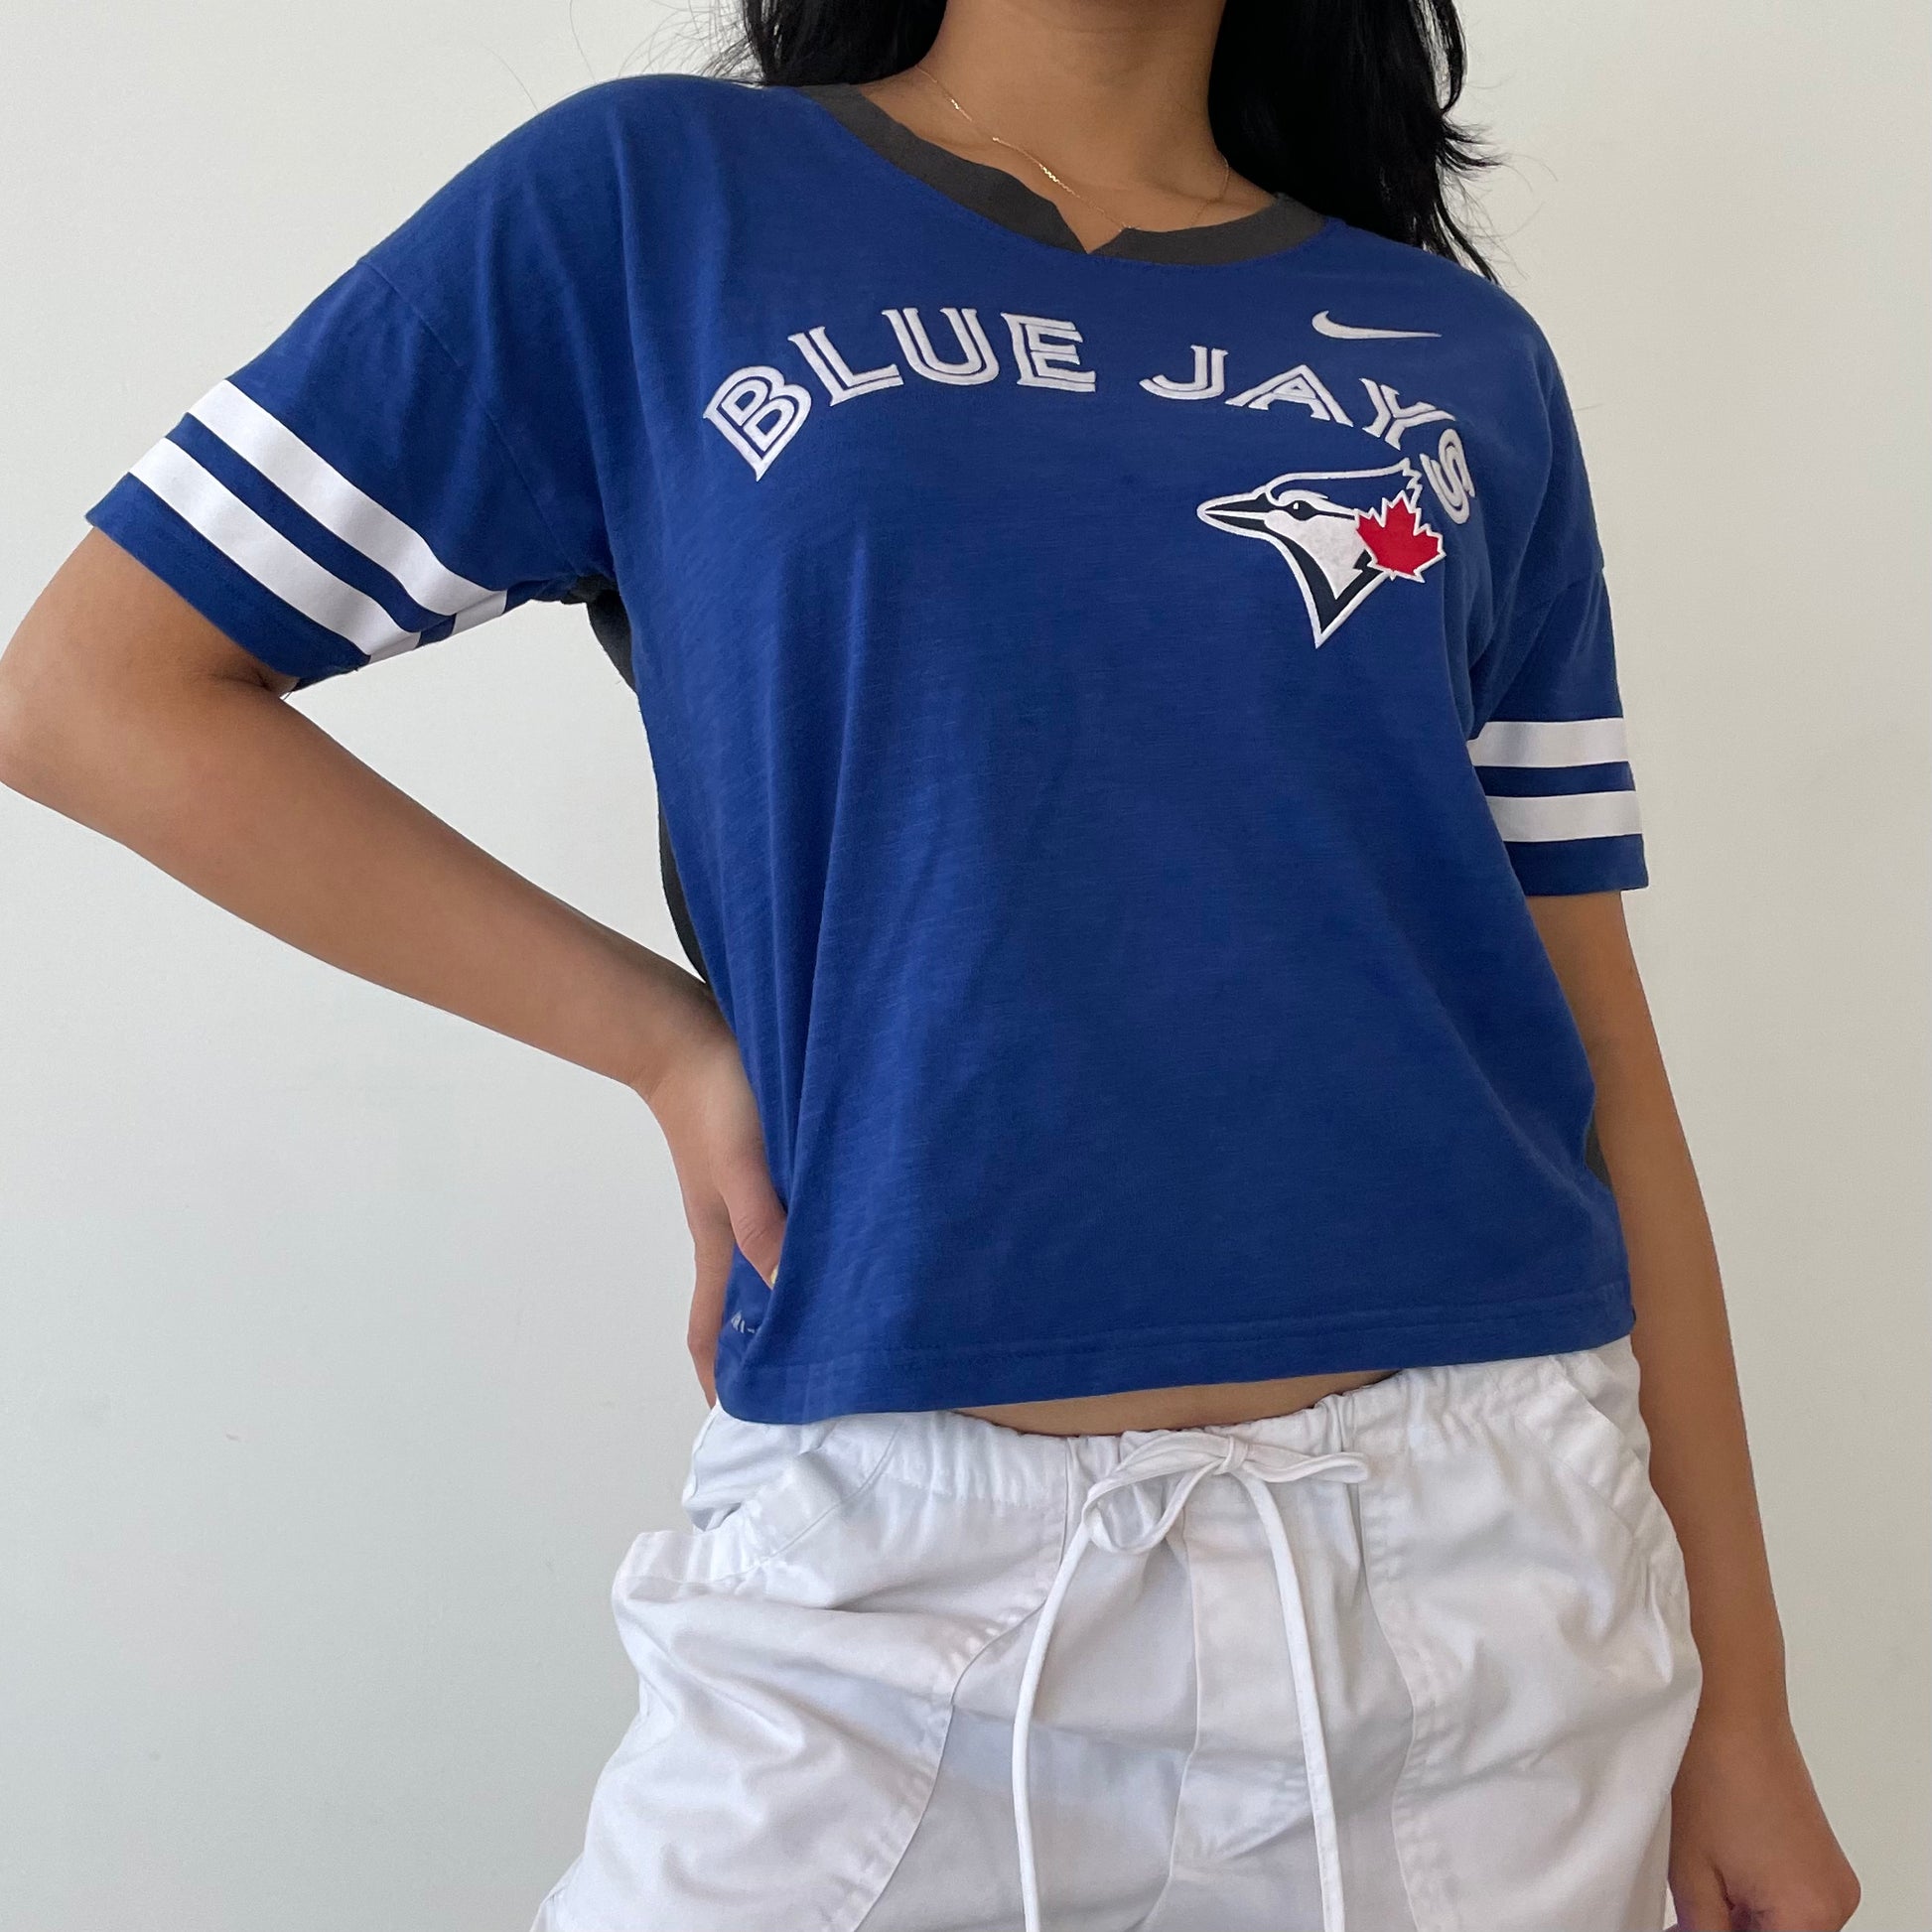 women's blue jays jersey